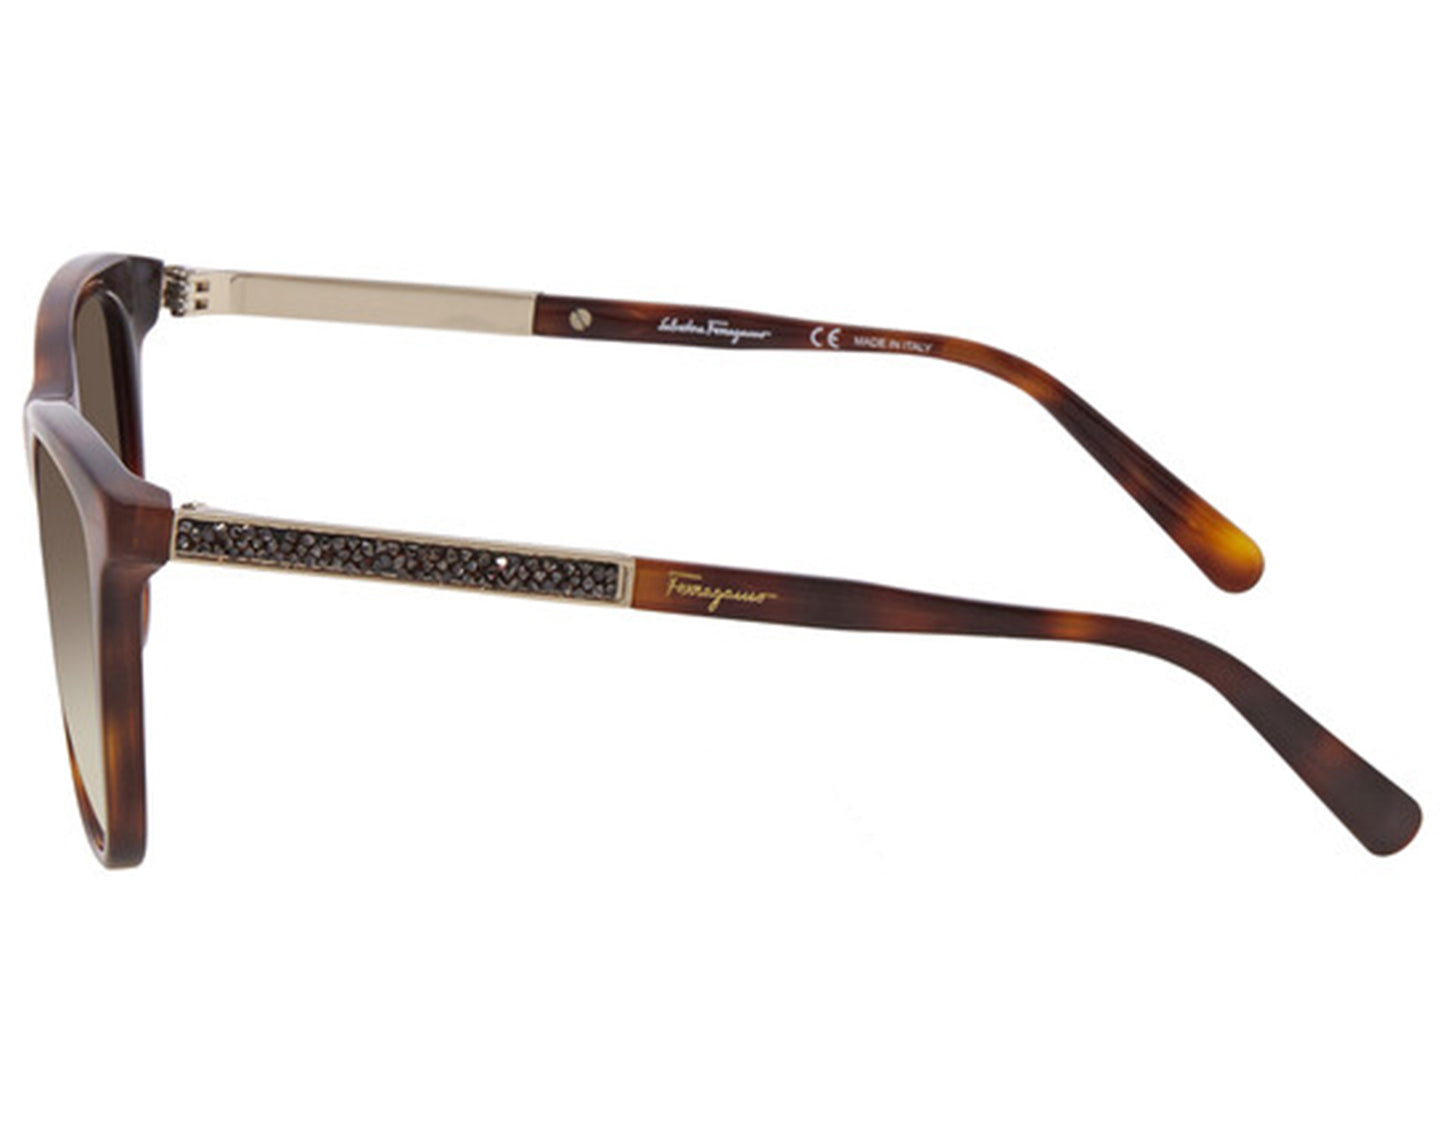 Salvatore Ferragamo SF888SR-214-5317 53mm New Sunglasses